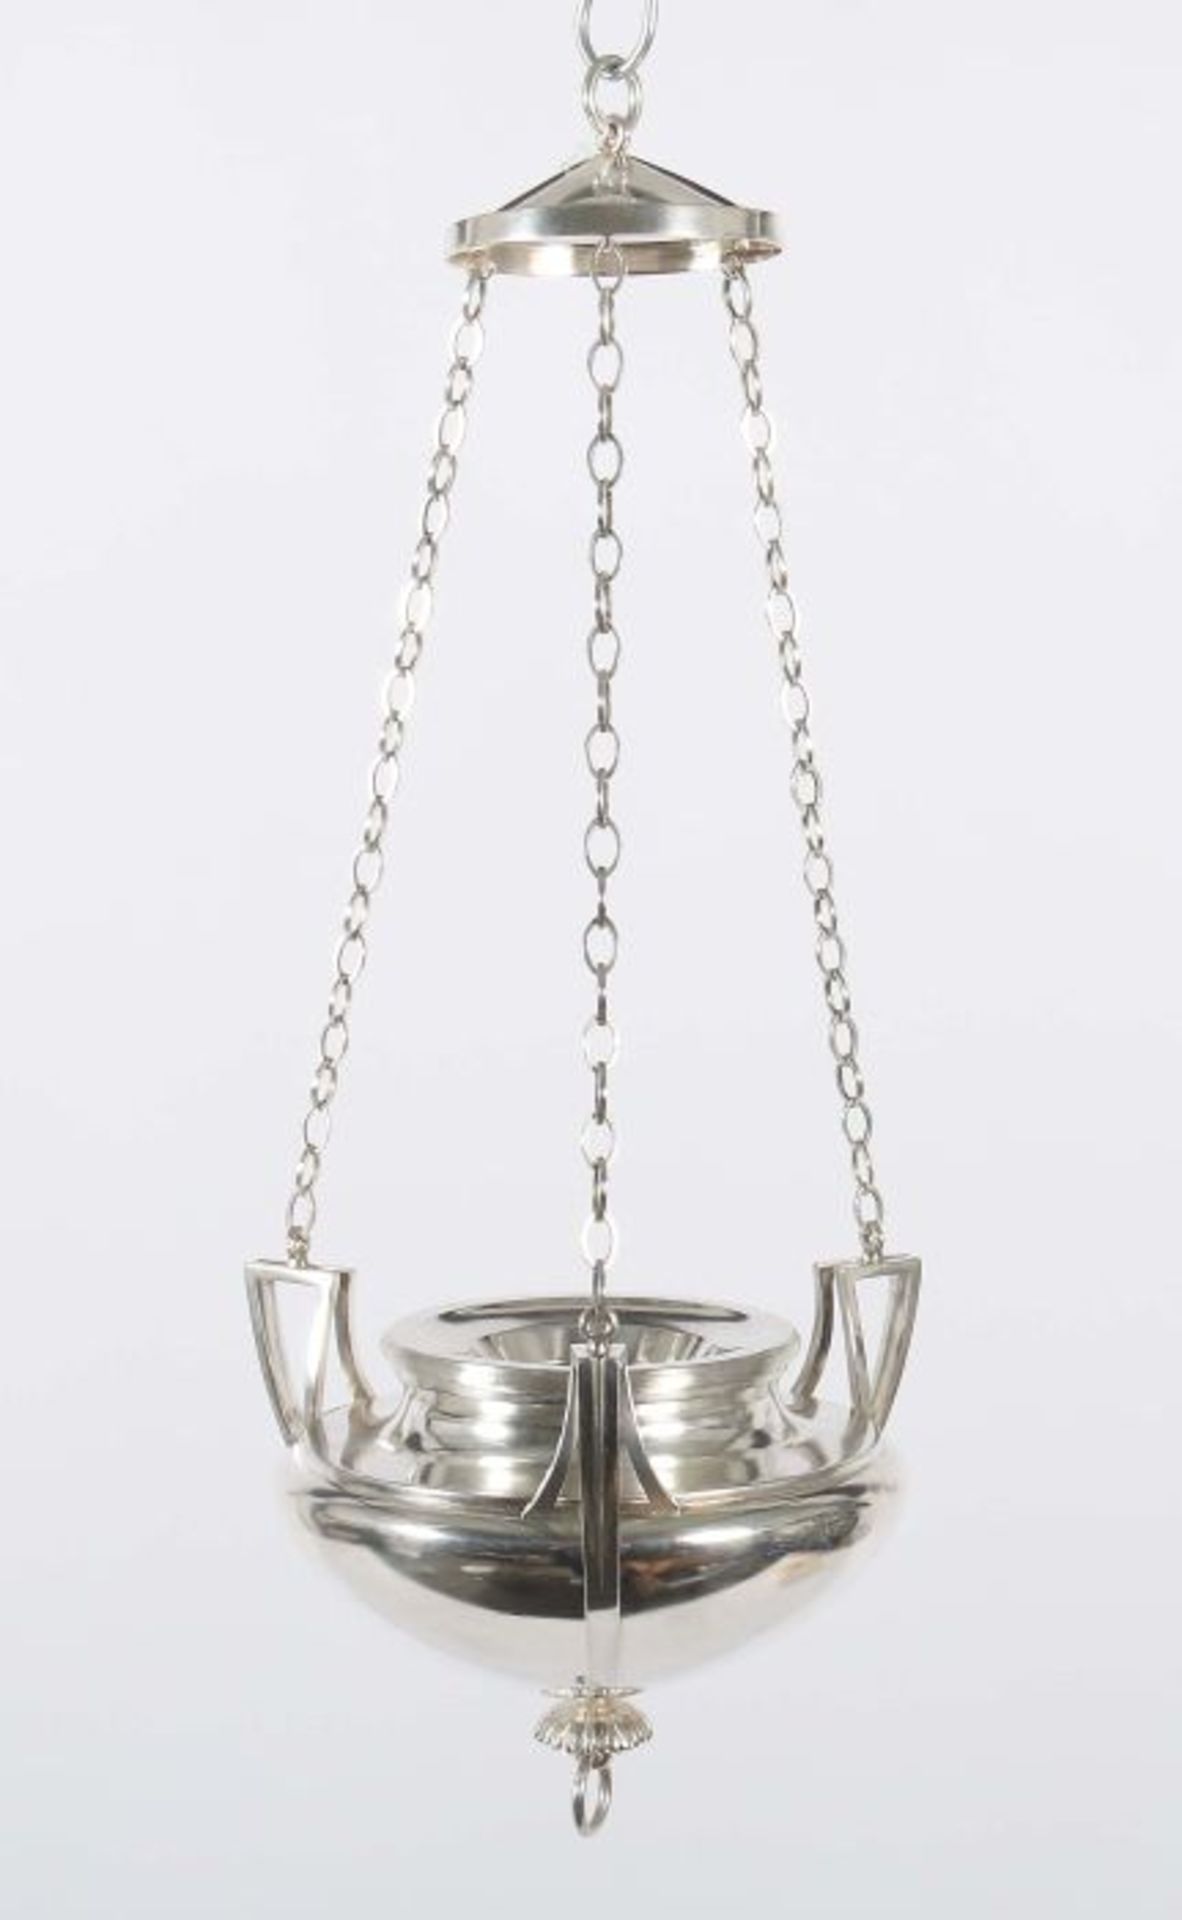 Ewiges LichtWien, 1798, Silber 13-lötig, ca. 1413 g, schalenförmiger Gefäßkörper mit